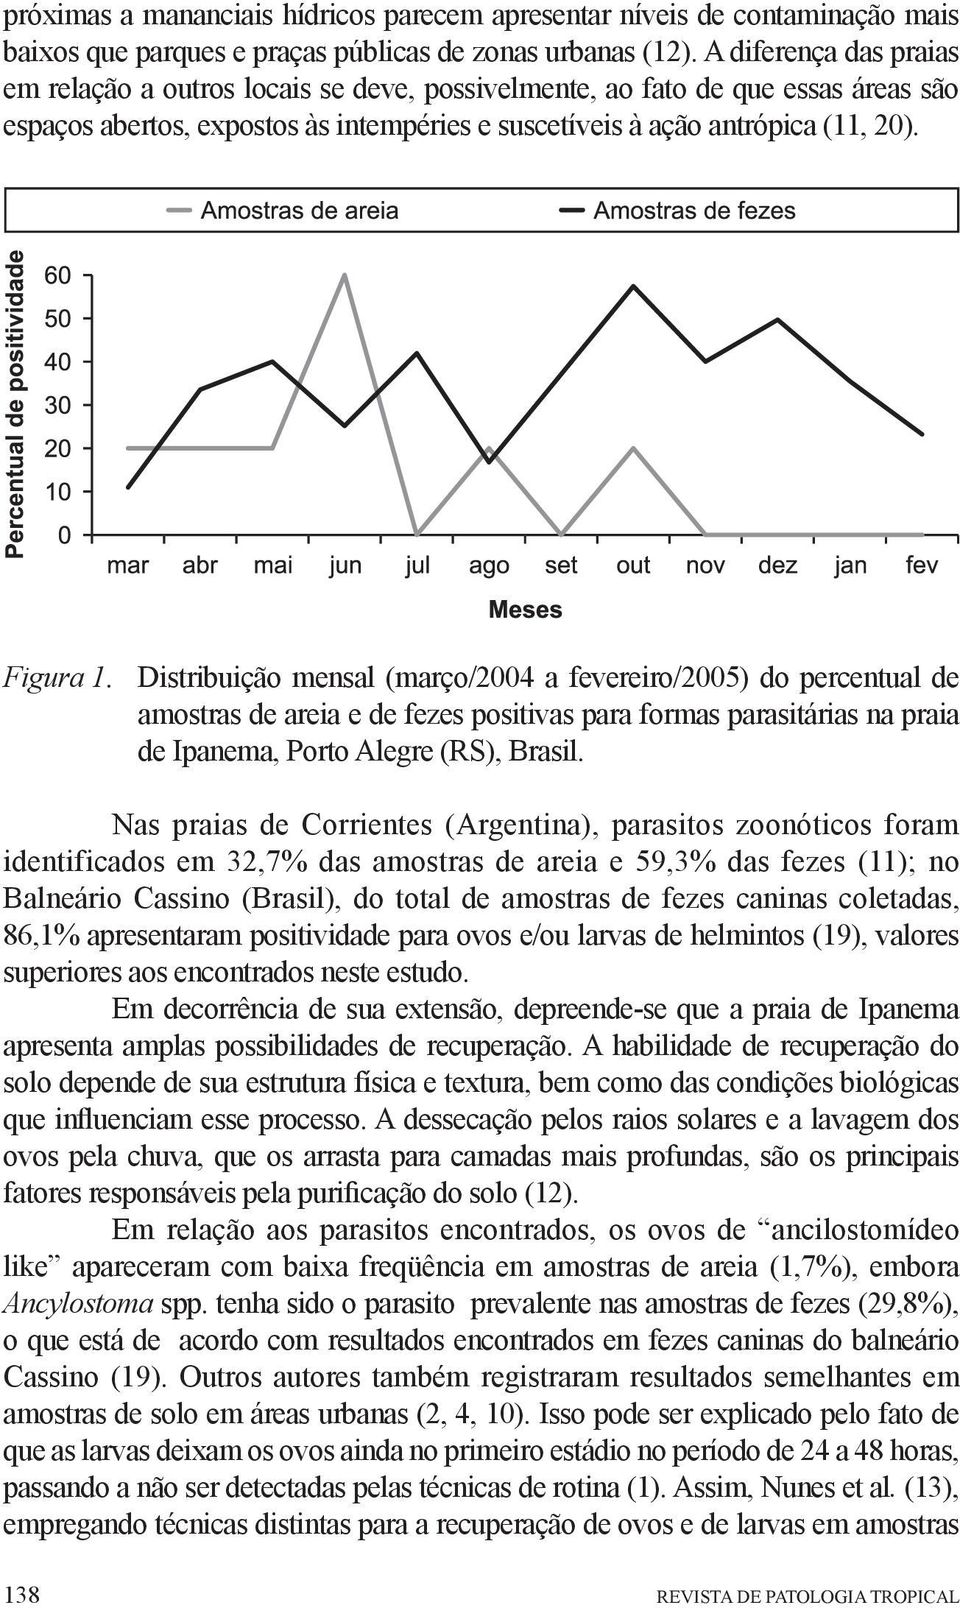 Distribuição mensal (março/2004 a fevereiro/2005) do percentual de amostras de areia e de fezes positivas para formas parasitárias na praia de Ipanema, Porto Alegre (RS), Brasil.